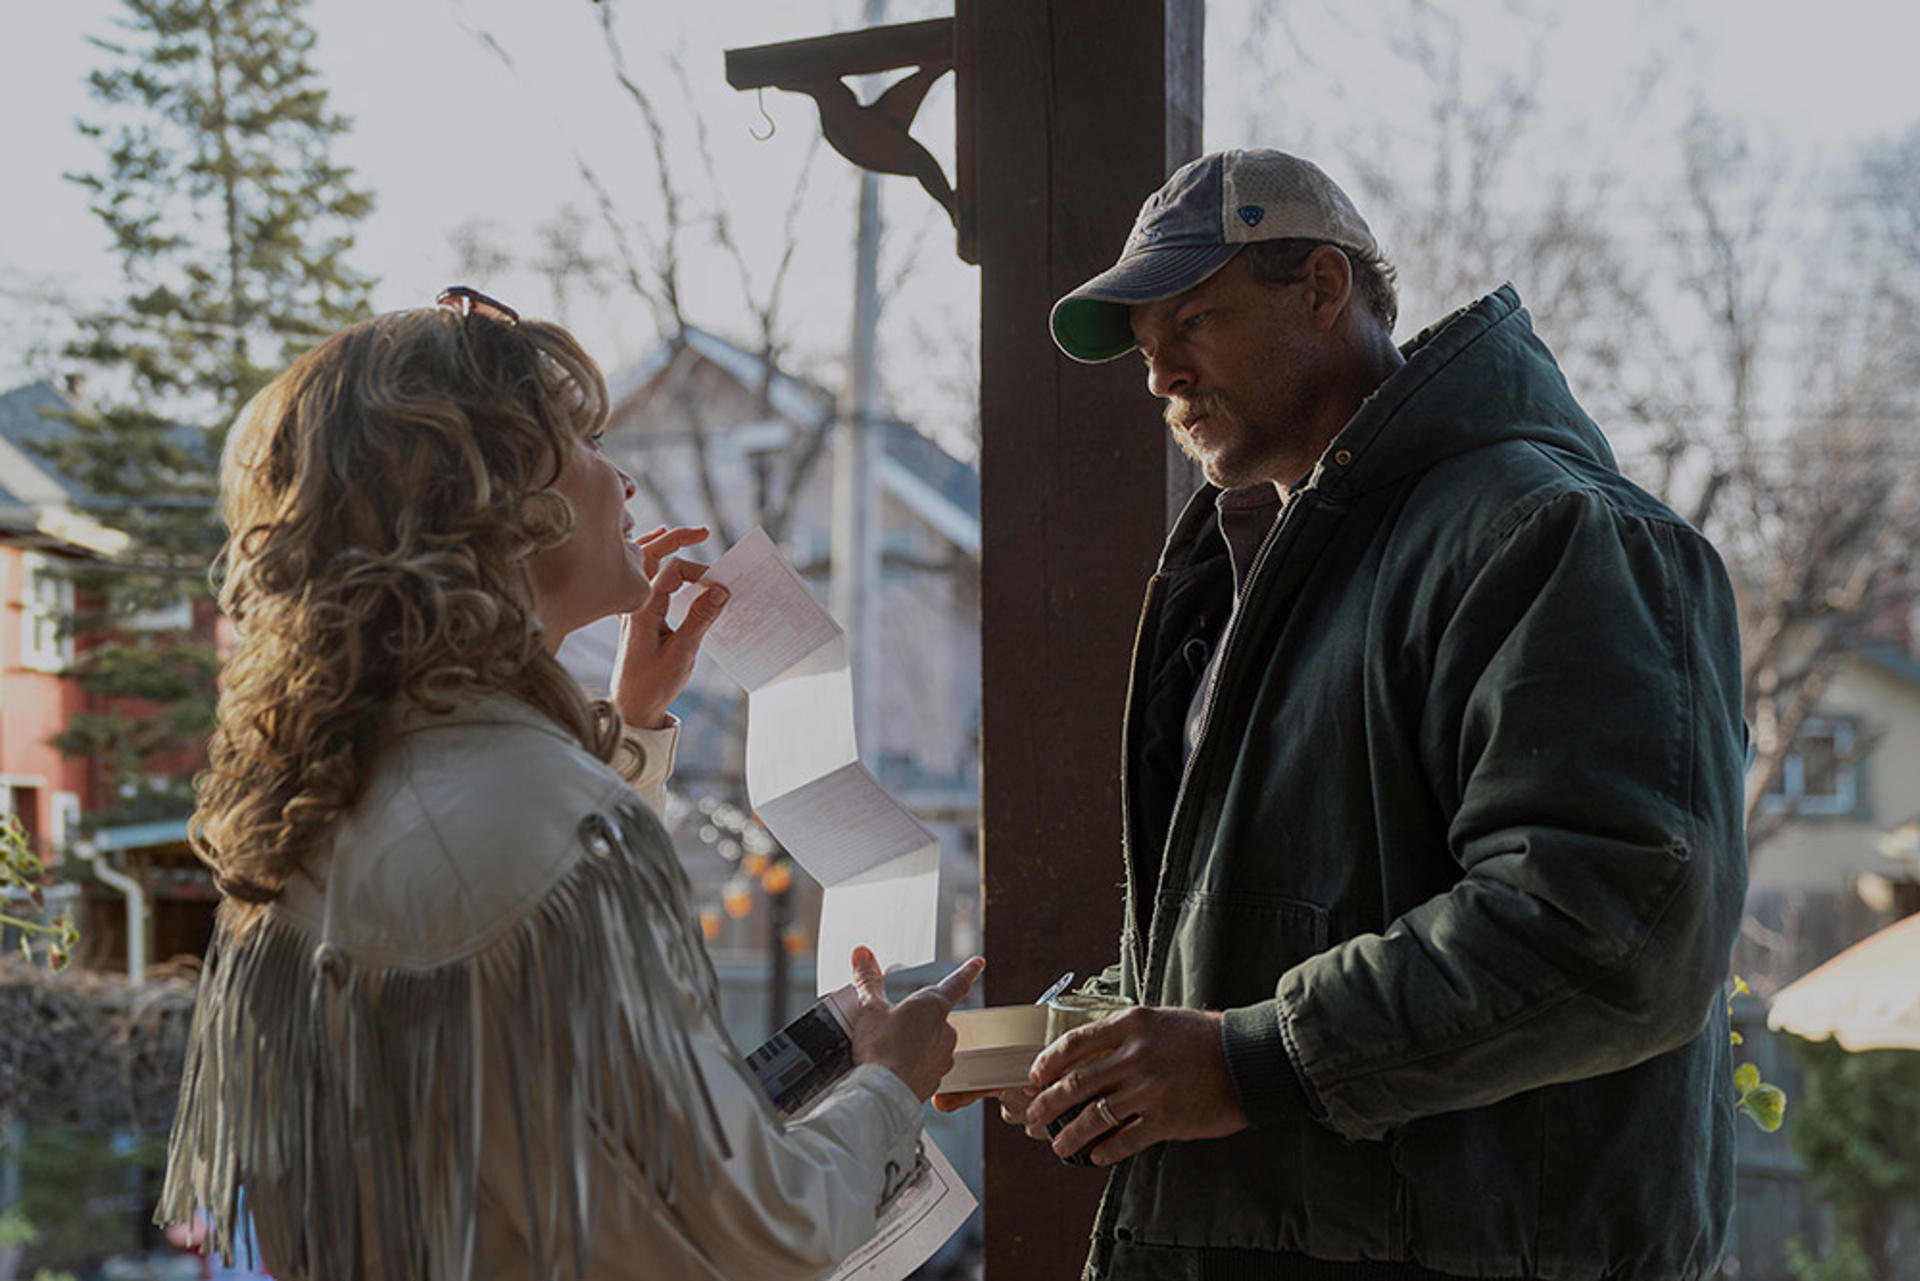 Fotograma cedido por Lionsgate que muestra a los actores Hilary Swank (i) y Alan Ritchson durante una escena de la película 'Ordinary Angels'. EFE/ Lionsgate SÓLO USO EDITORIAL/SÓLO DISPONIBLE PARA ILUSTRAR LA NOTICIA QUE ACOMPAÑA (CRÉDITO OBLIGATORIO)